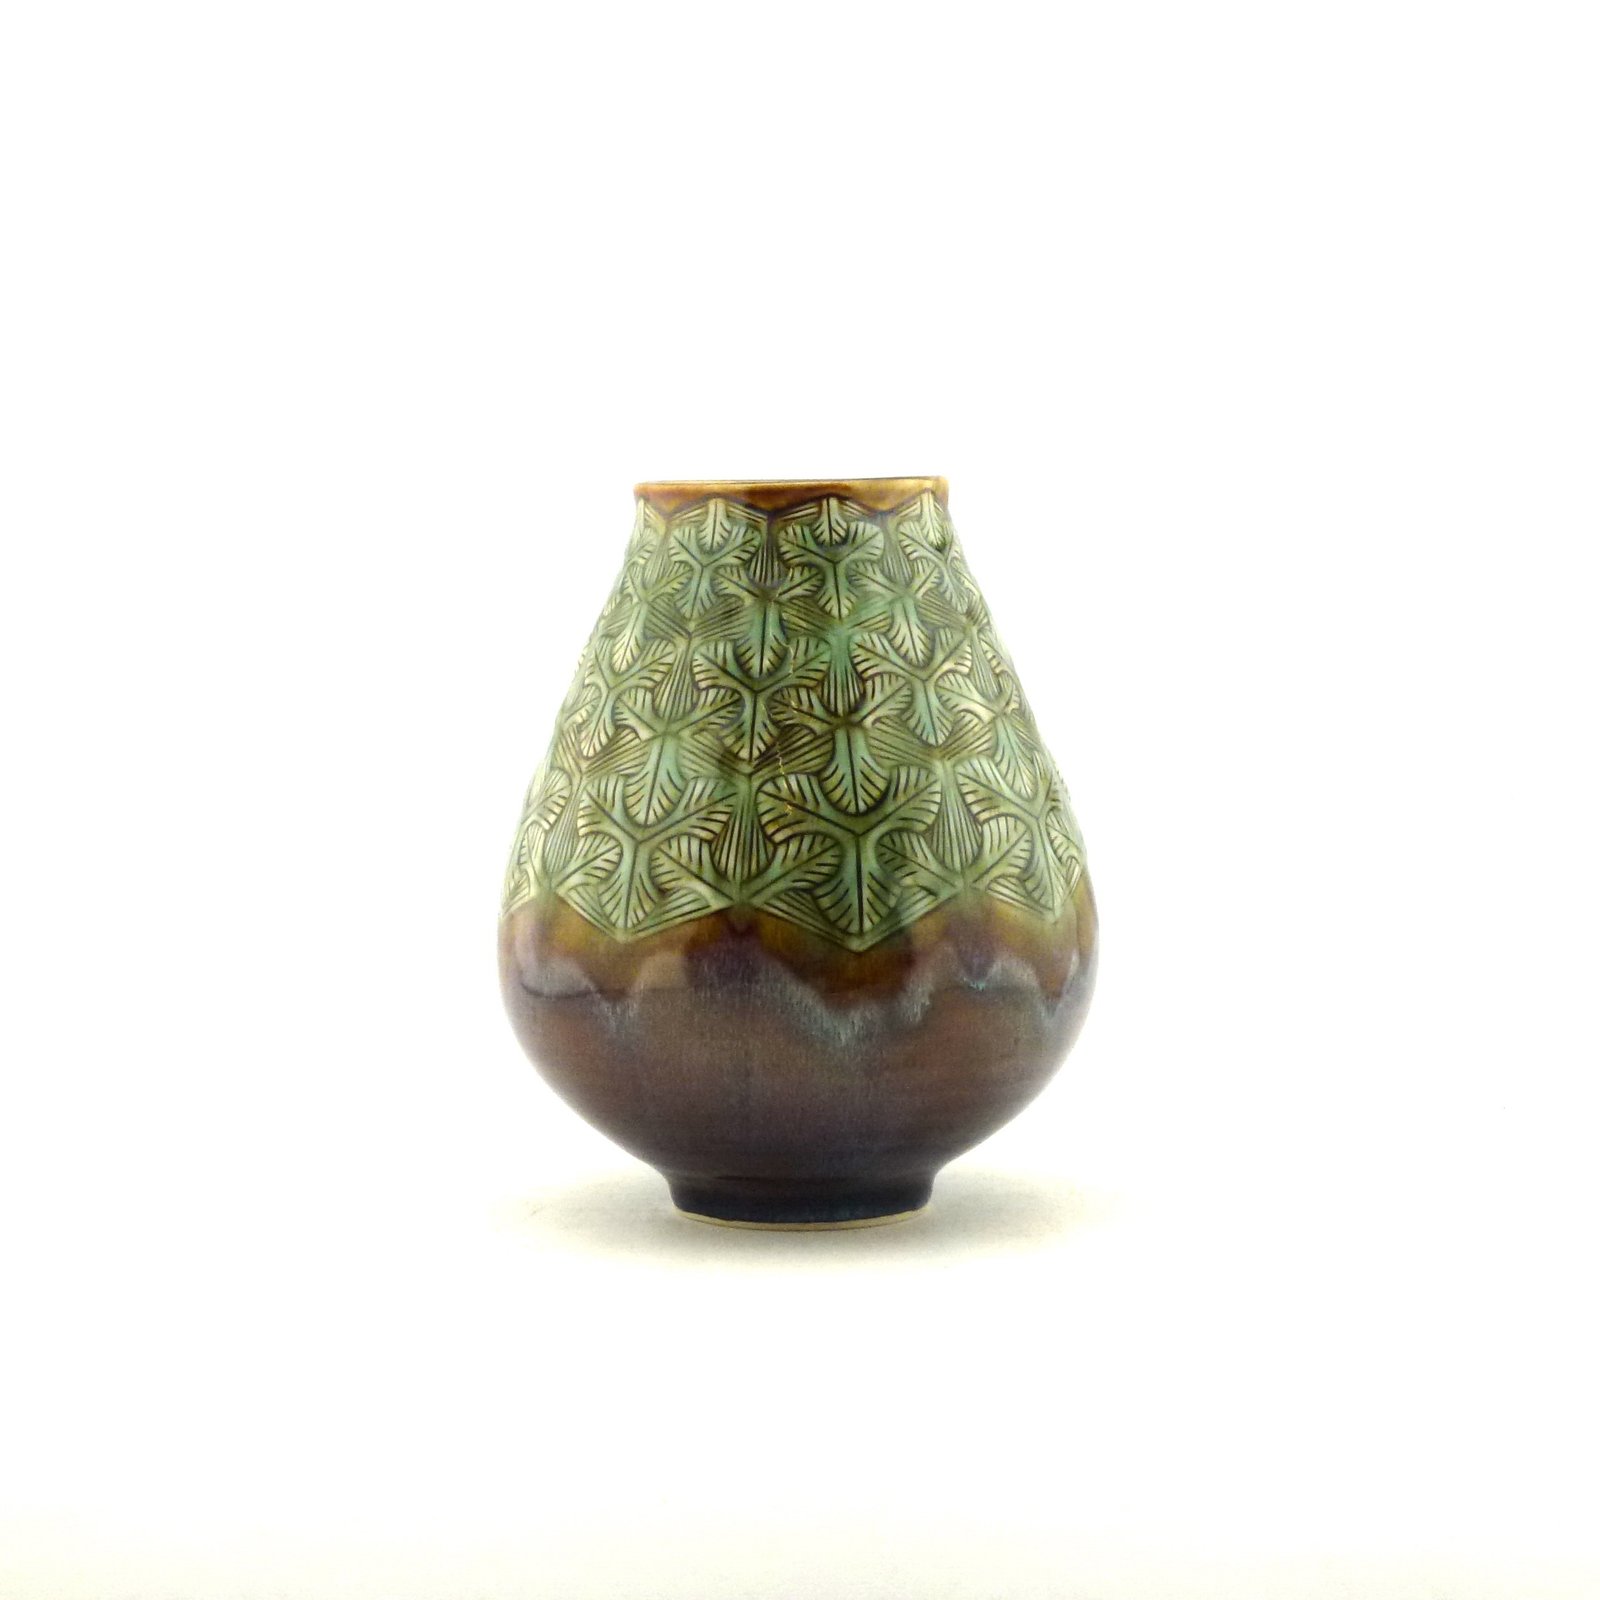 Medium Vase with detailed design